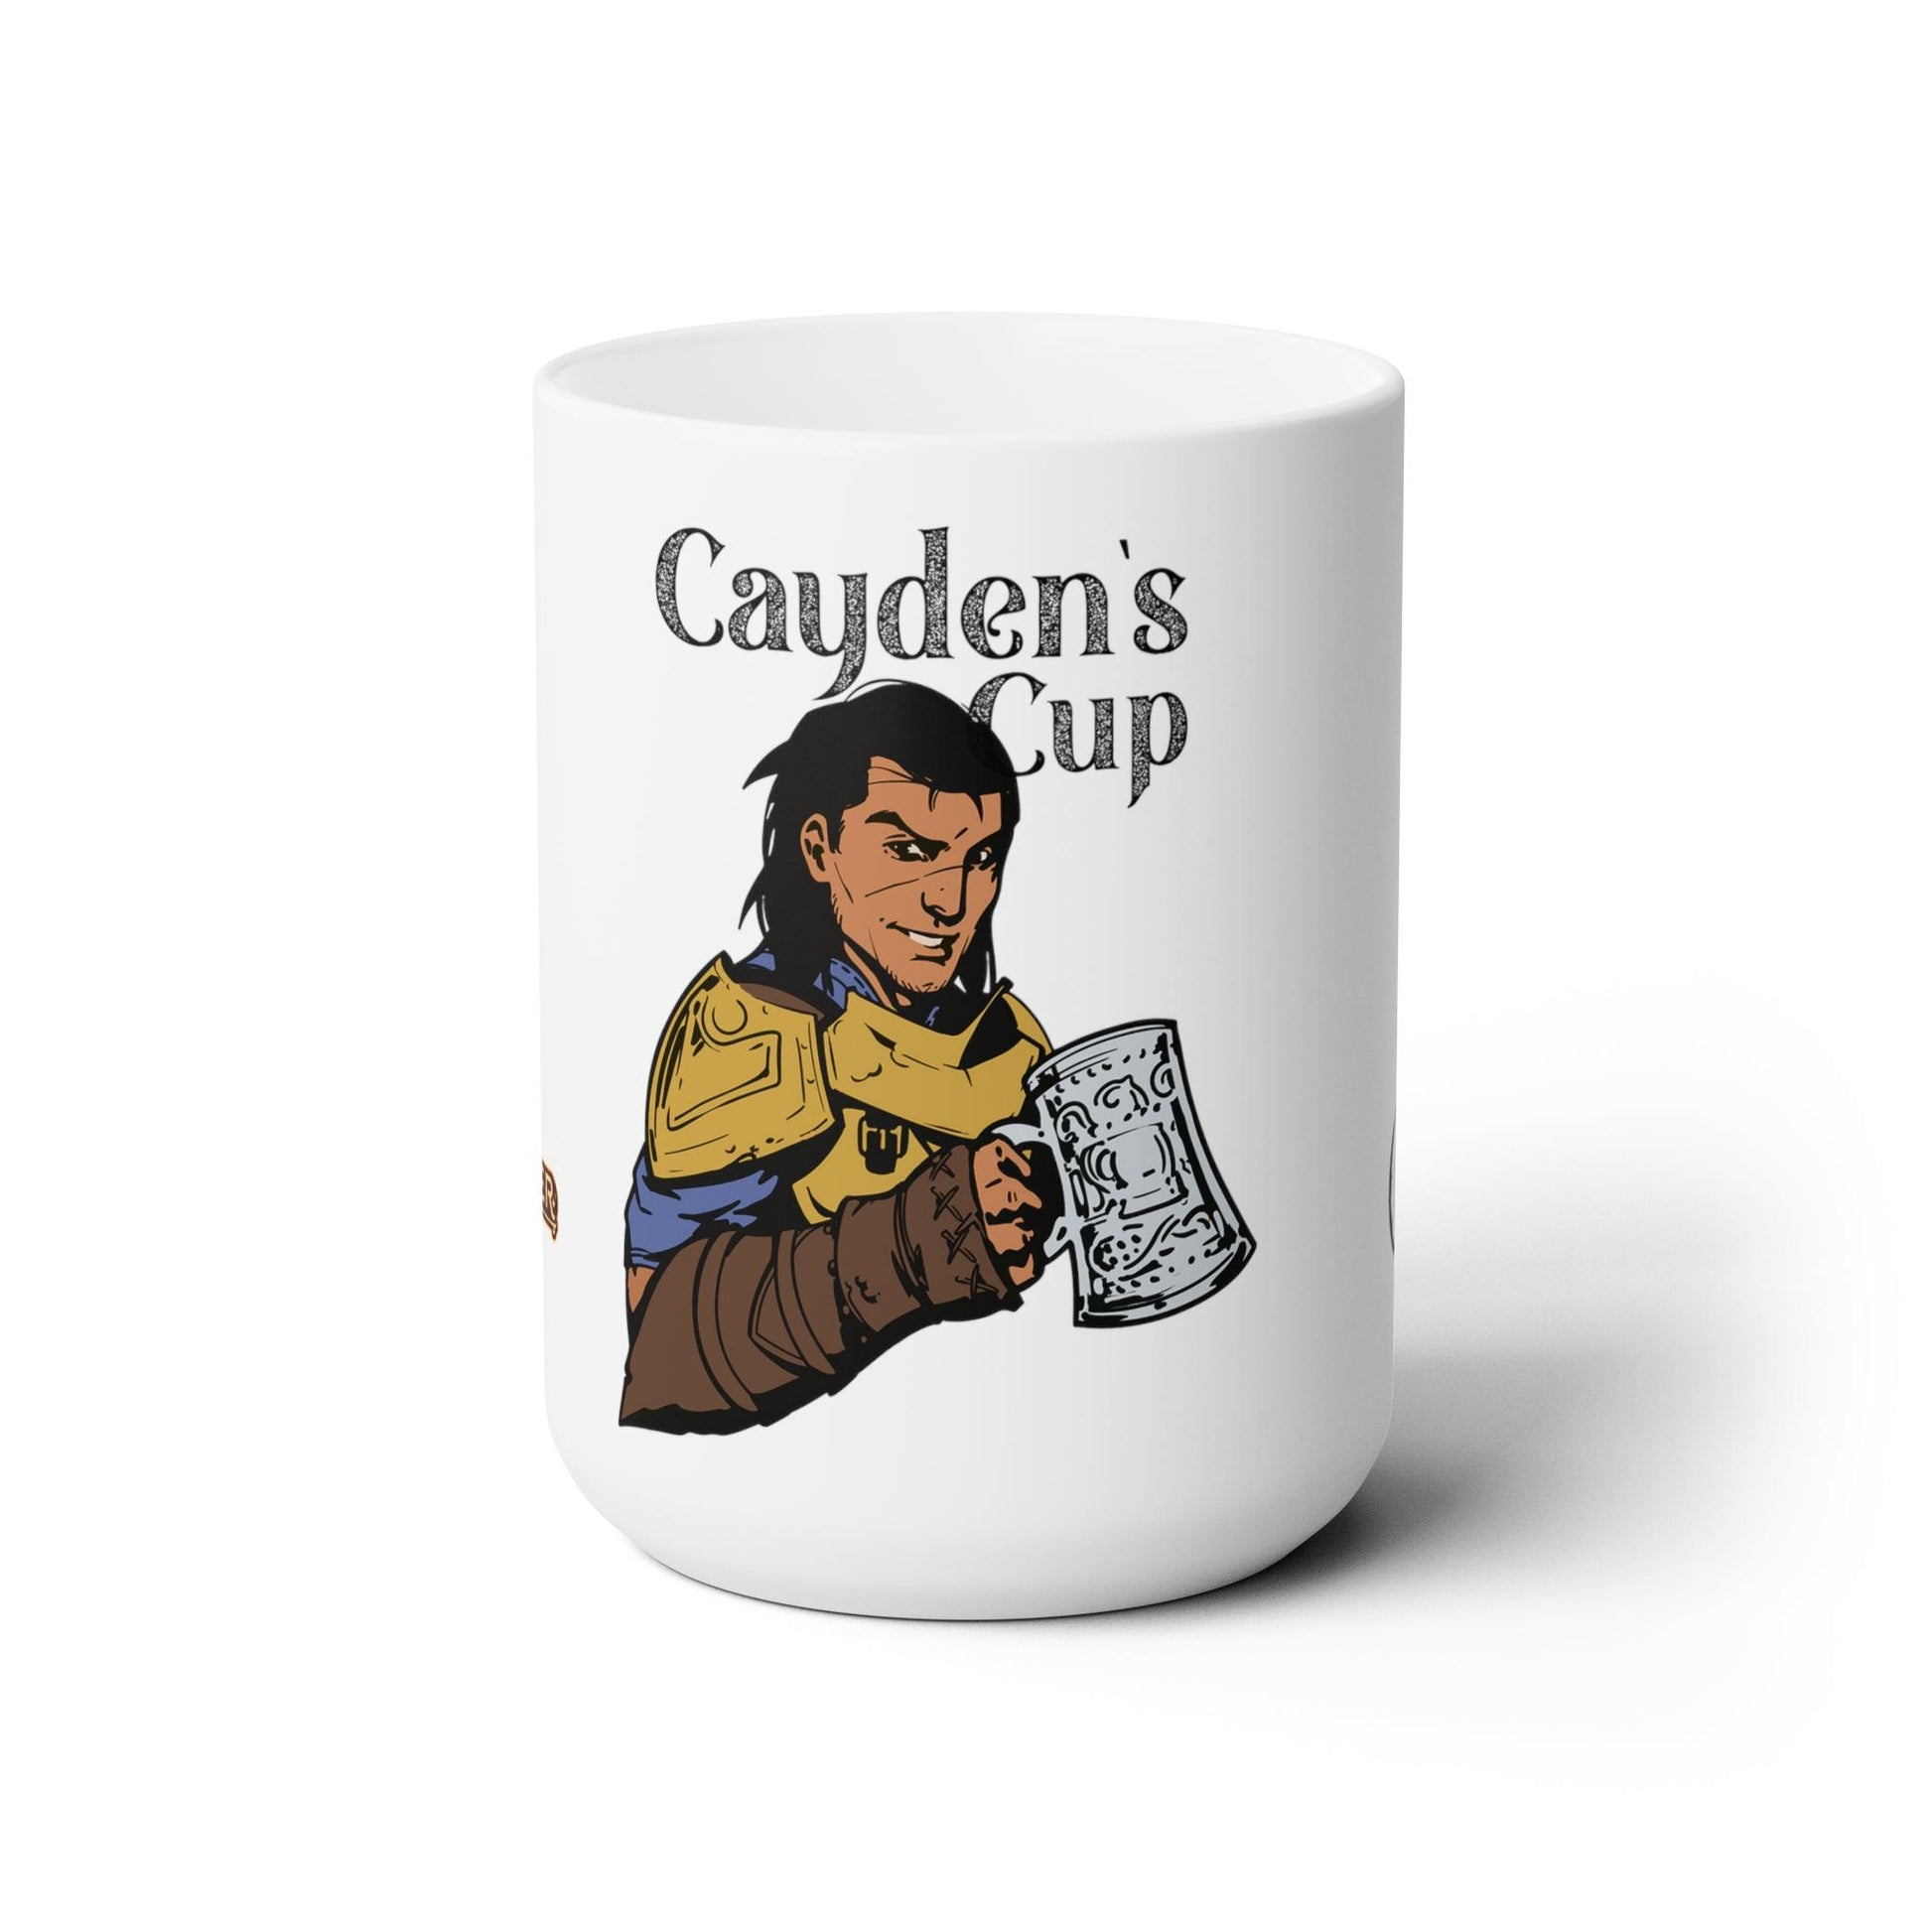 Cayden's Cup Mug - Pathfinder - Geek Grind Coffee